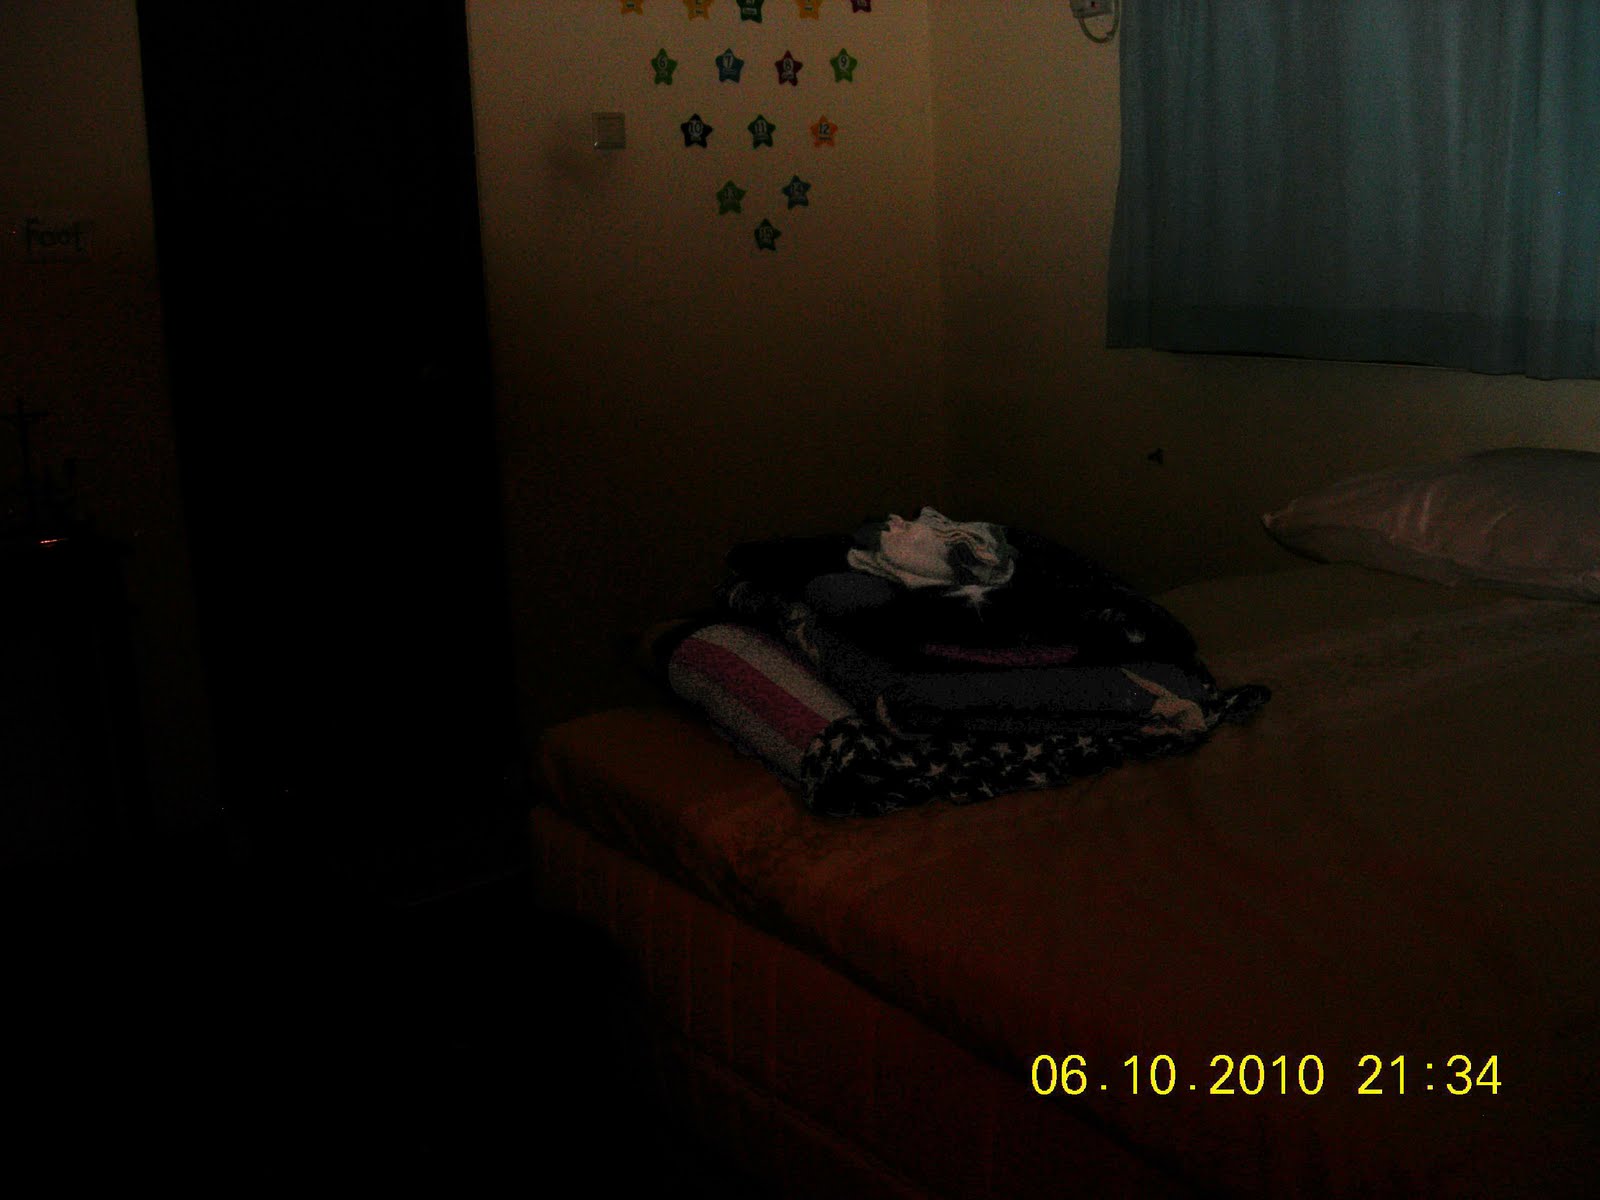 http://2.bp.blogspot.com/__sqMC3BEwb8/TMaFDGrRjMI/AAAAAAAAAD0/WcxwCyFTiWE/s1600/Dark+Room3.jpg